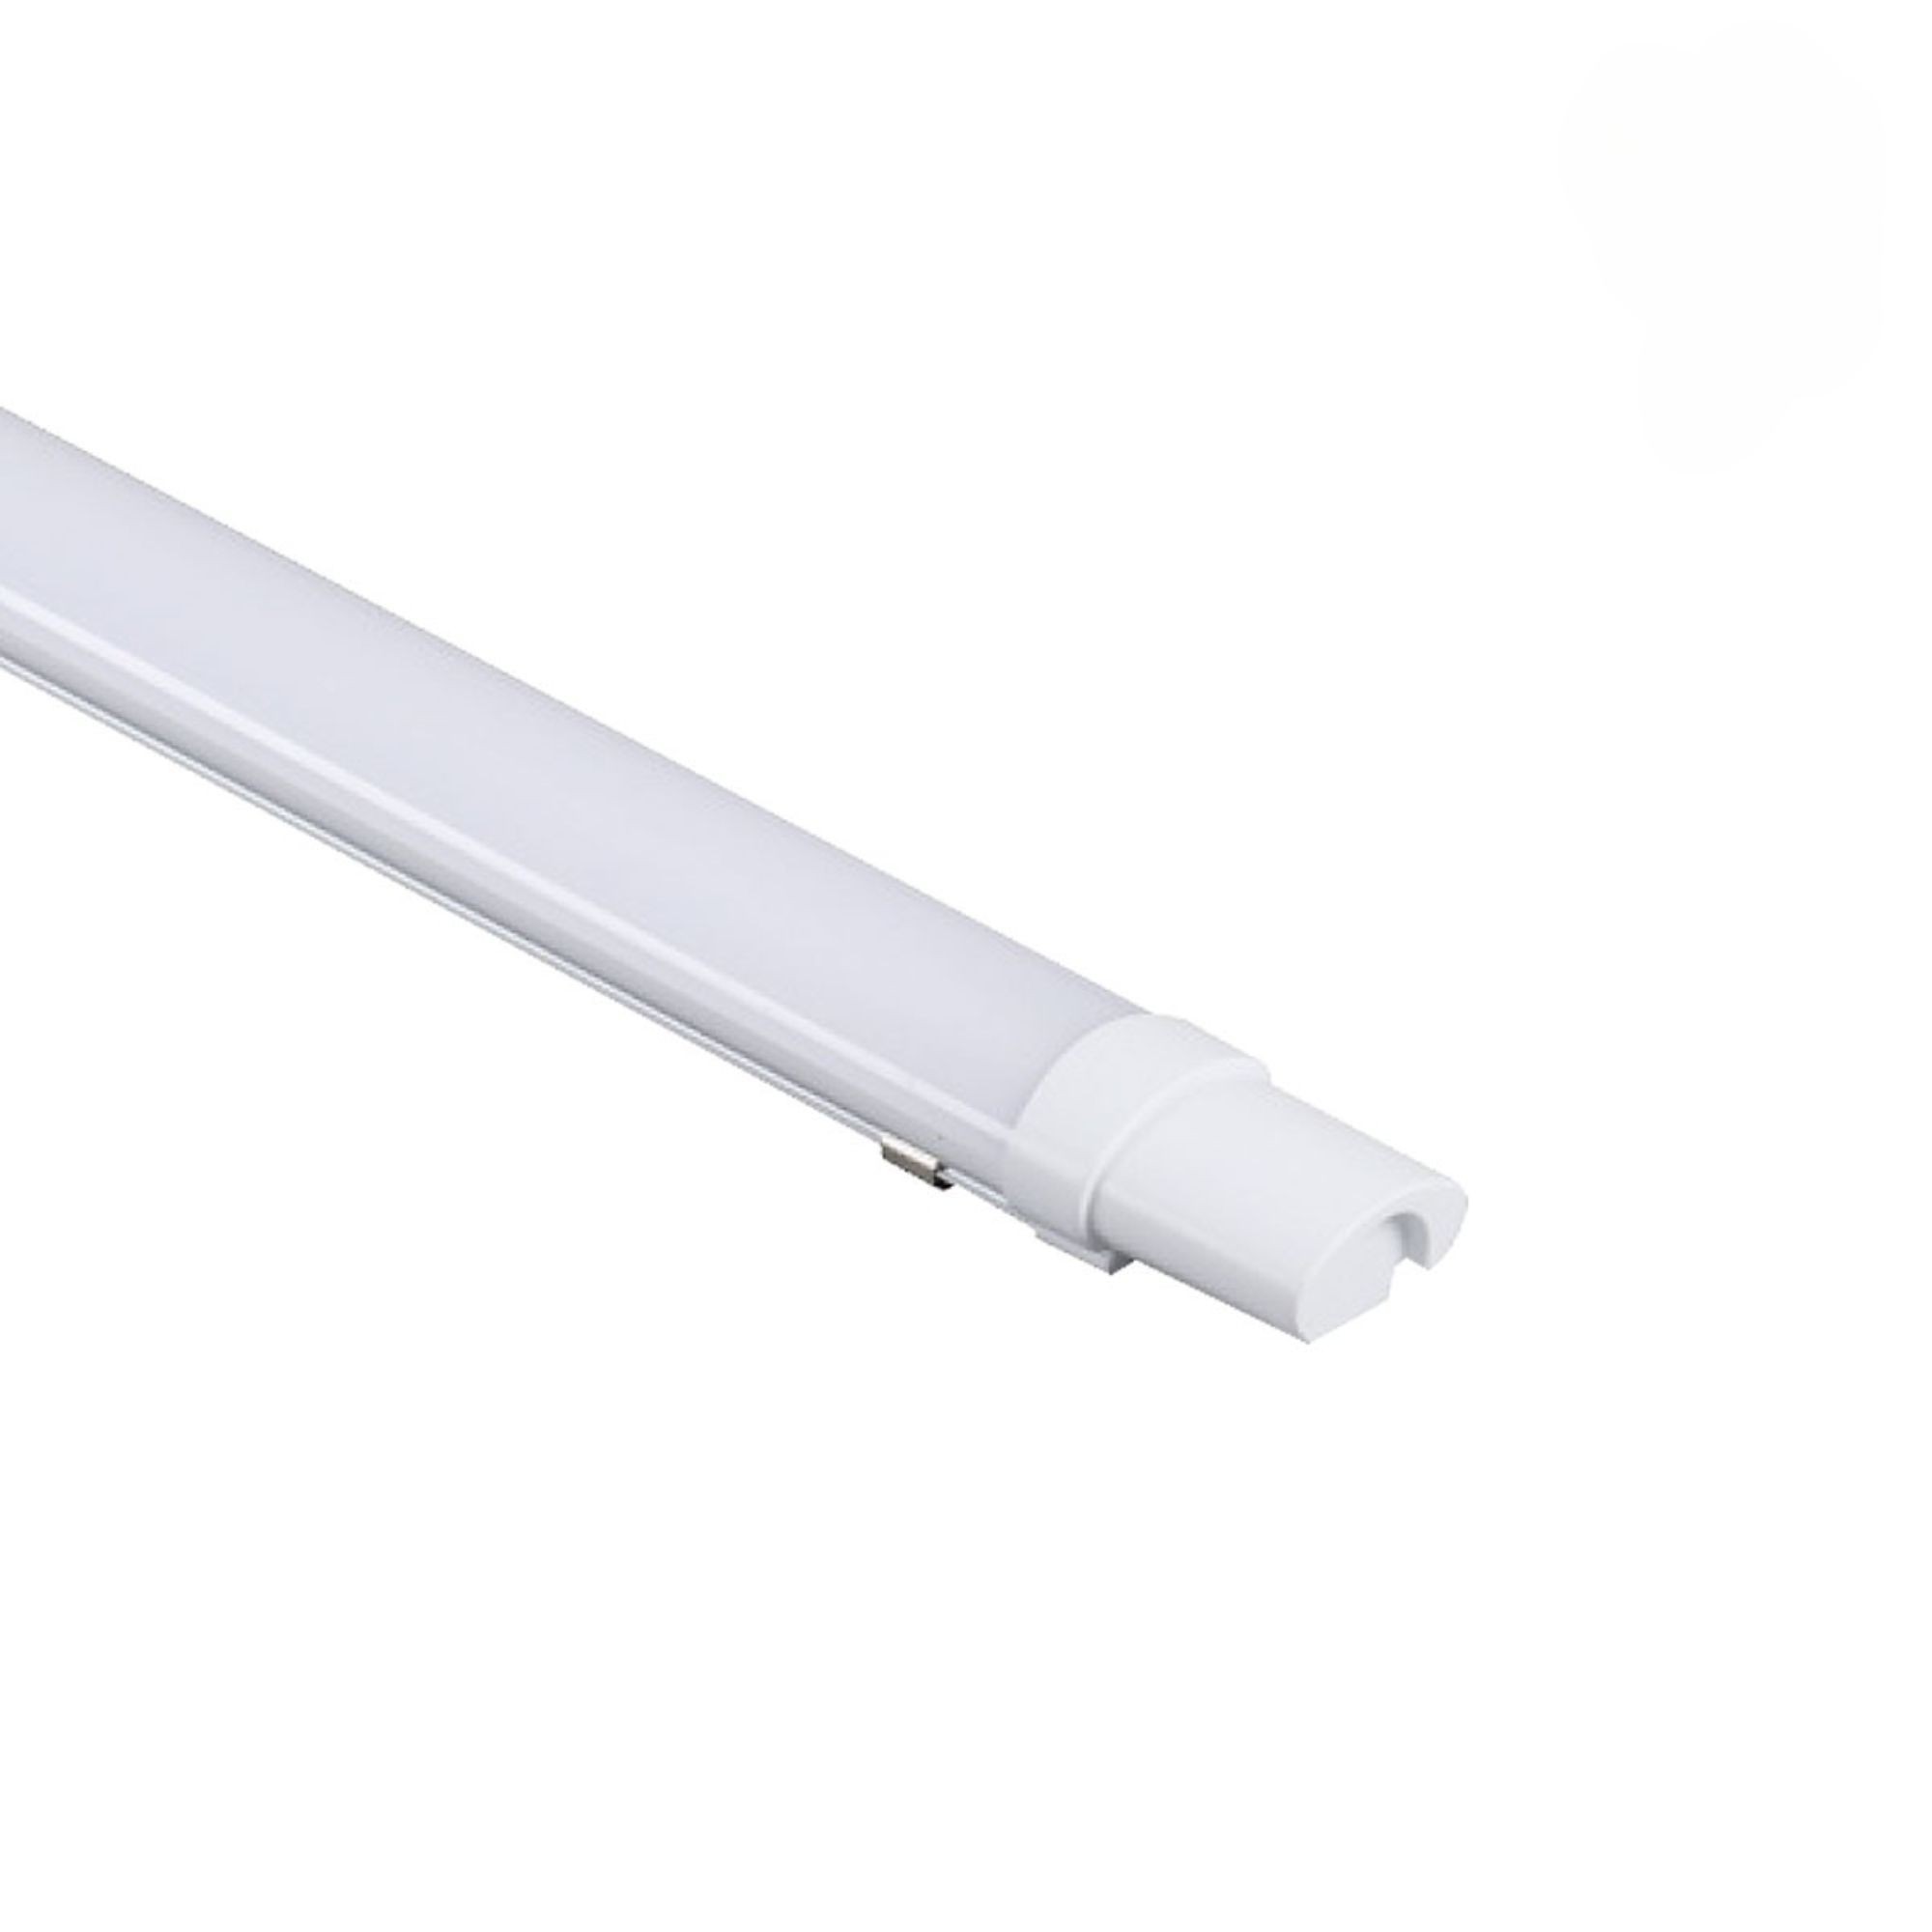 Luminaire à diffuseur à LED étanche à l'humidité - série LED-LUX